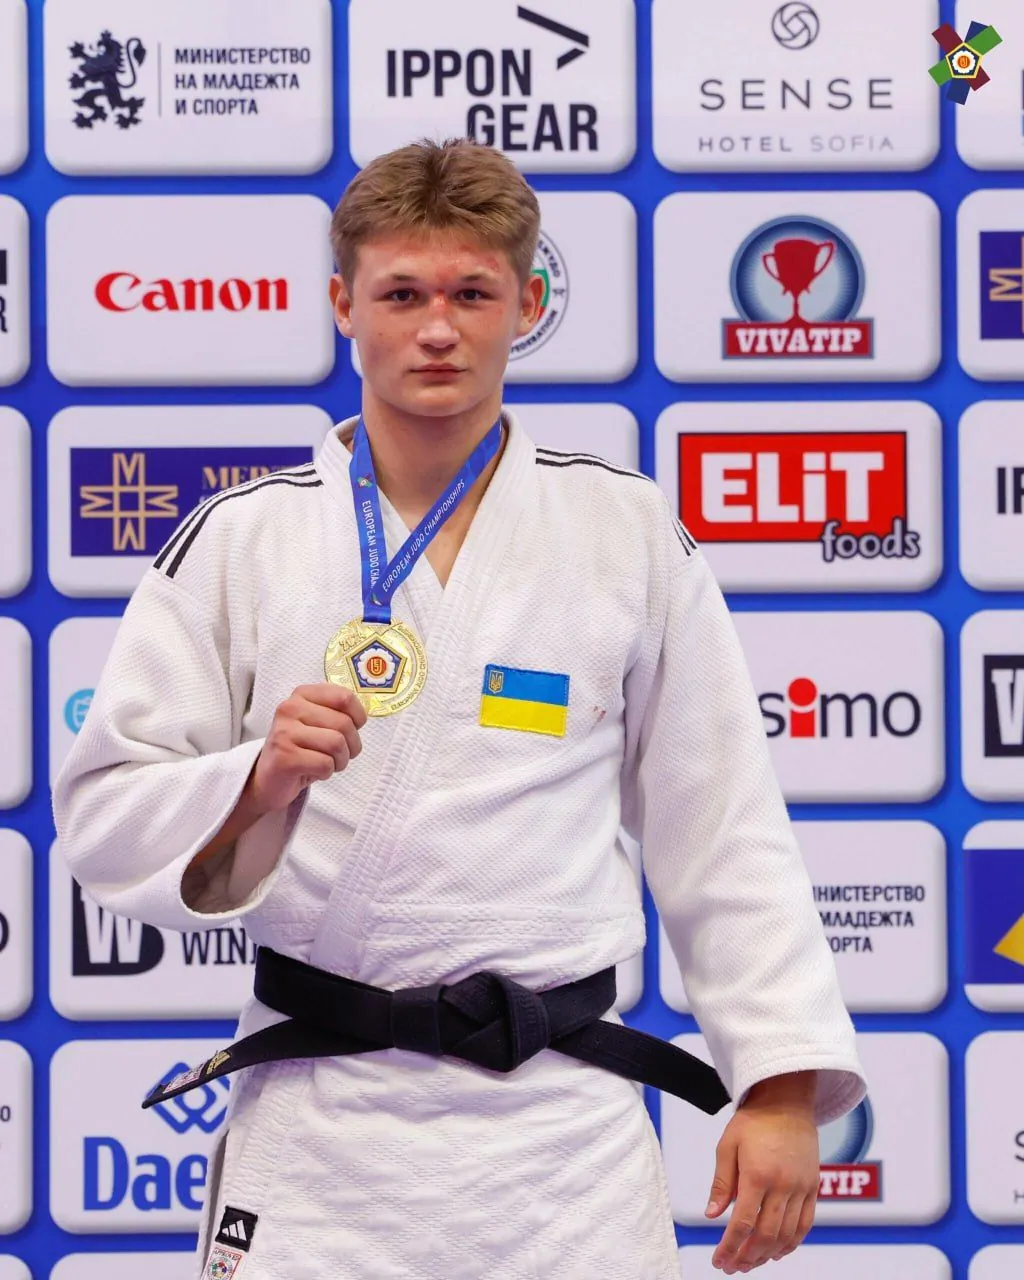 Ukrainian judokas performed brilliantly at the European Cadet Championships